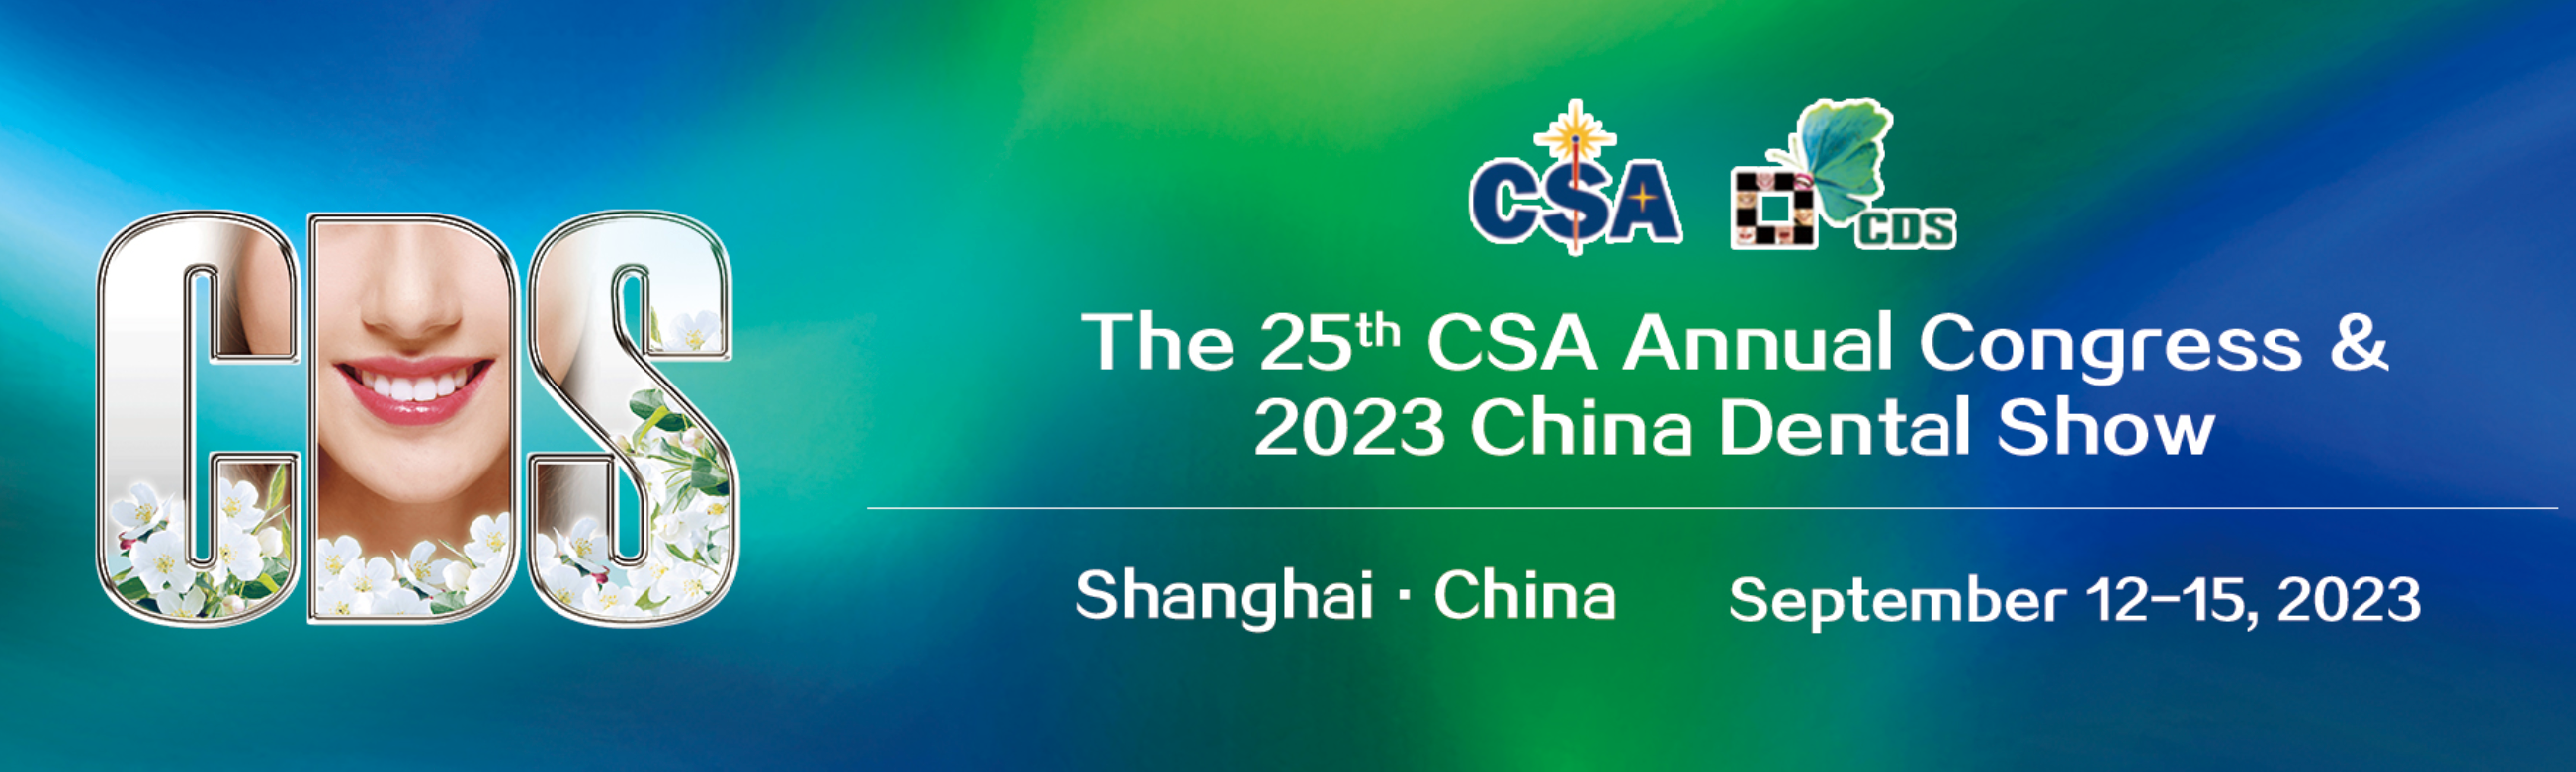 The 25th CSA Annual Congress & 2023 China Dental Show